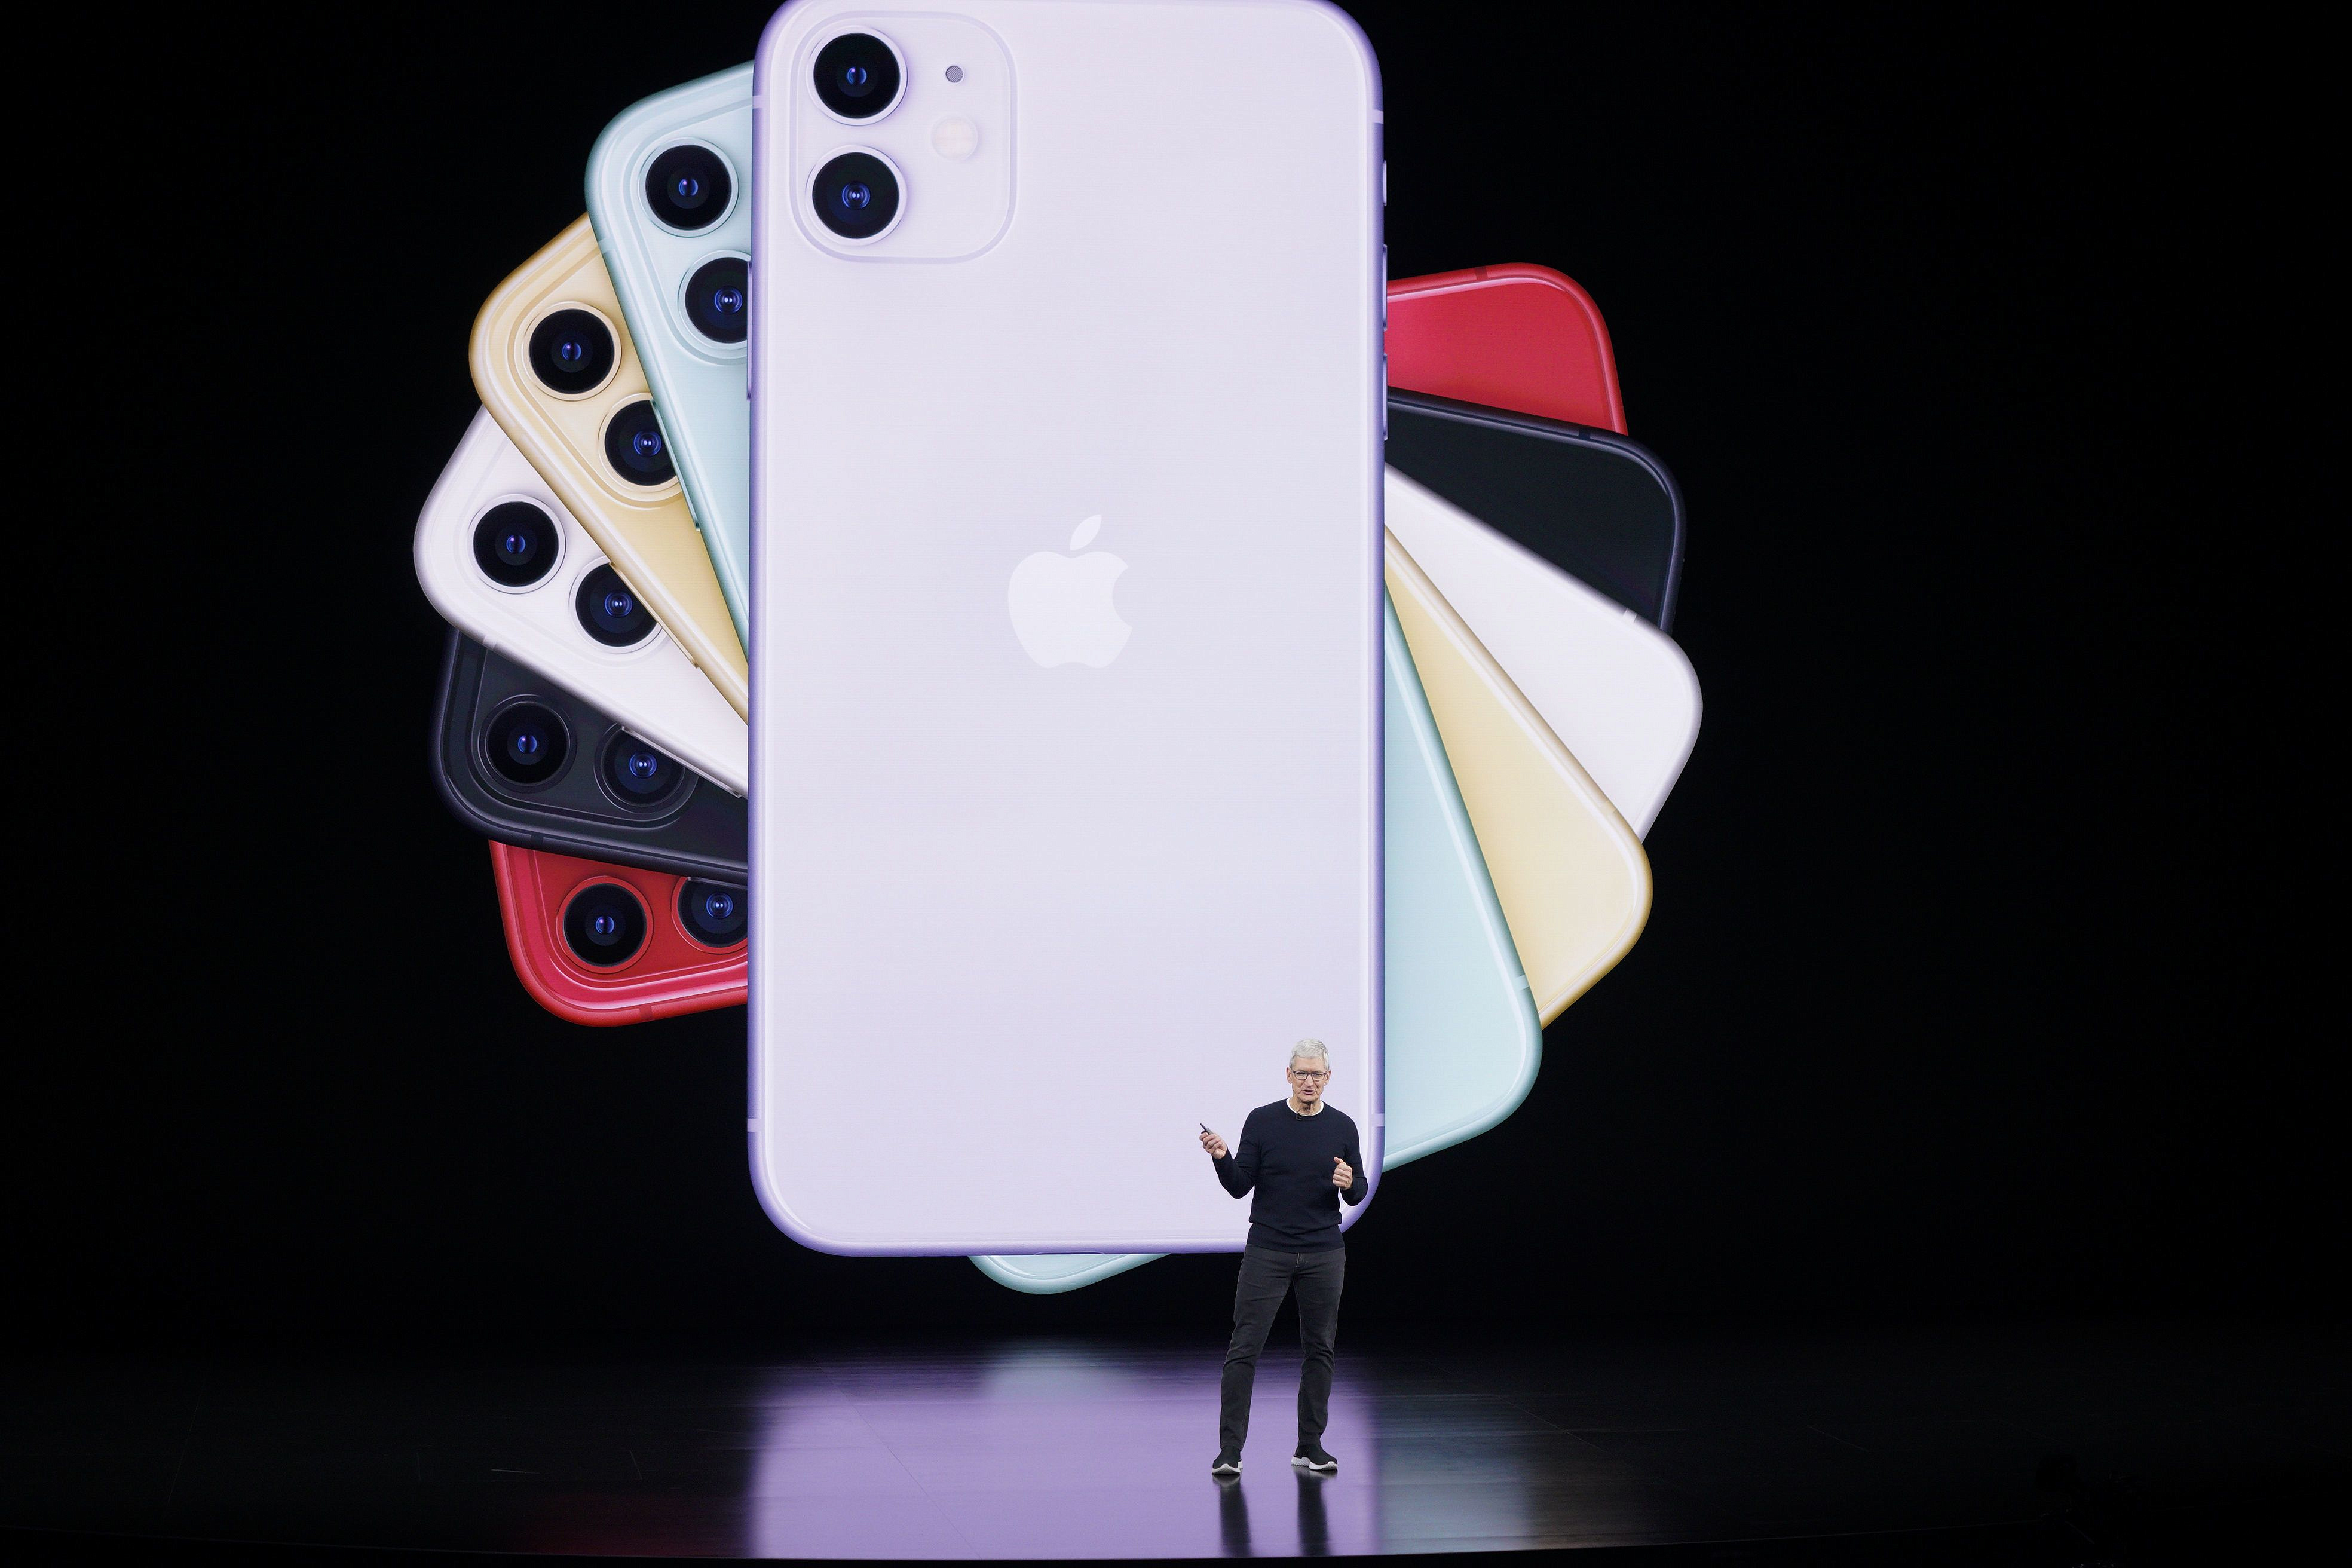 Apple снизила цены на новые iPhone 11